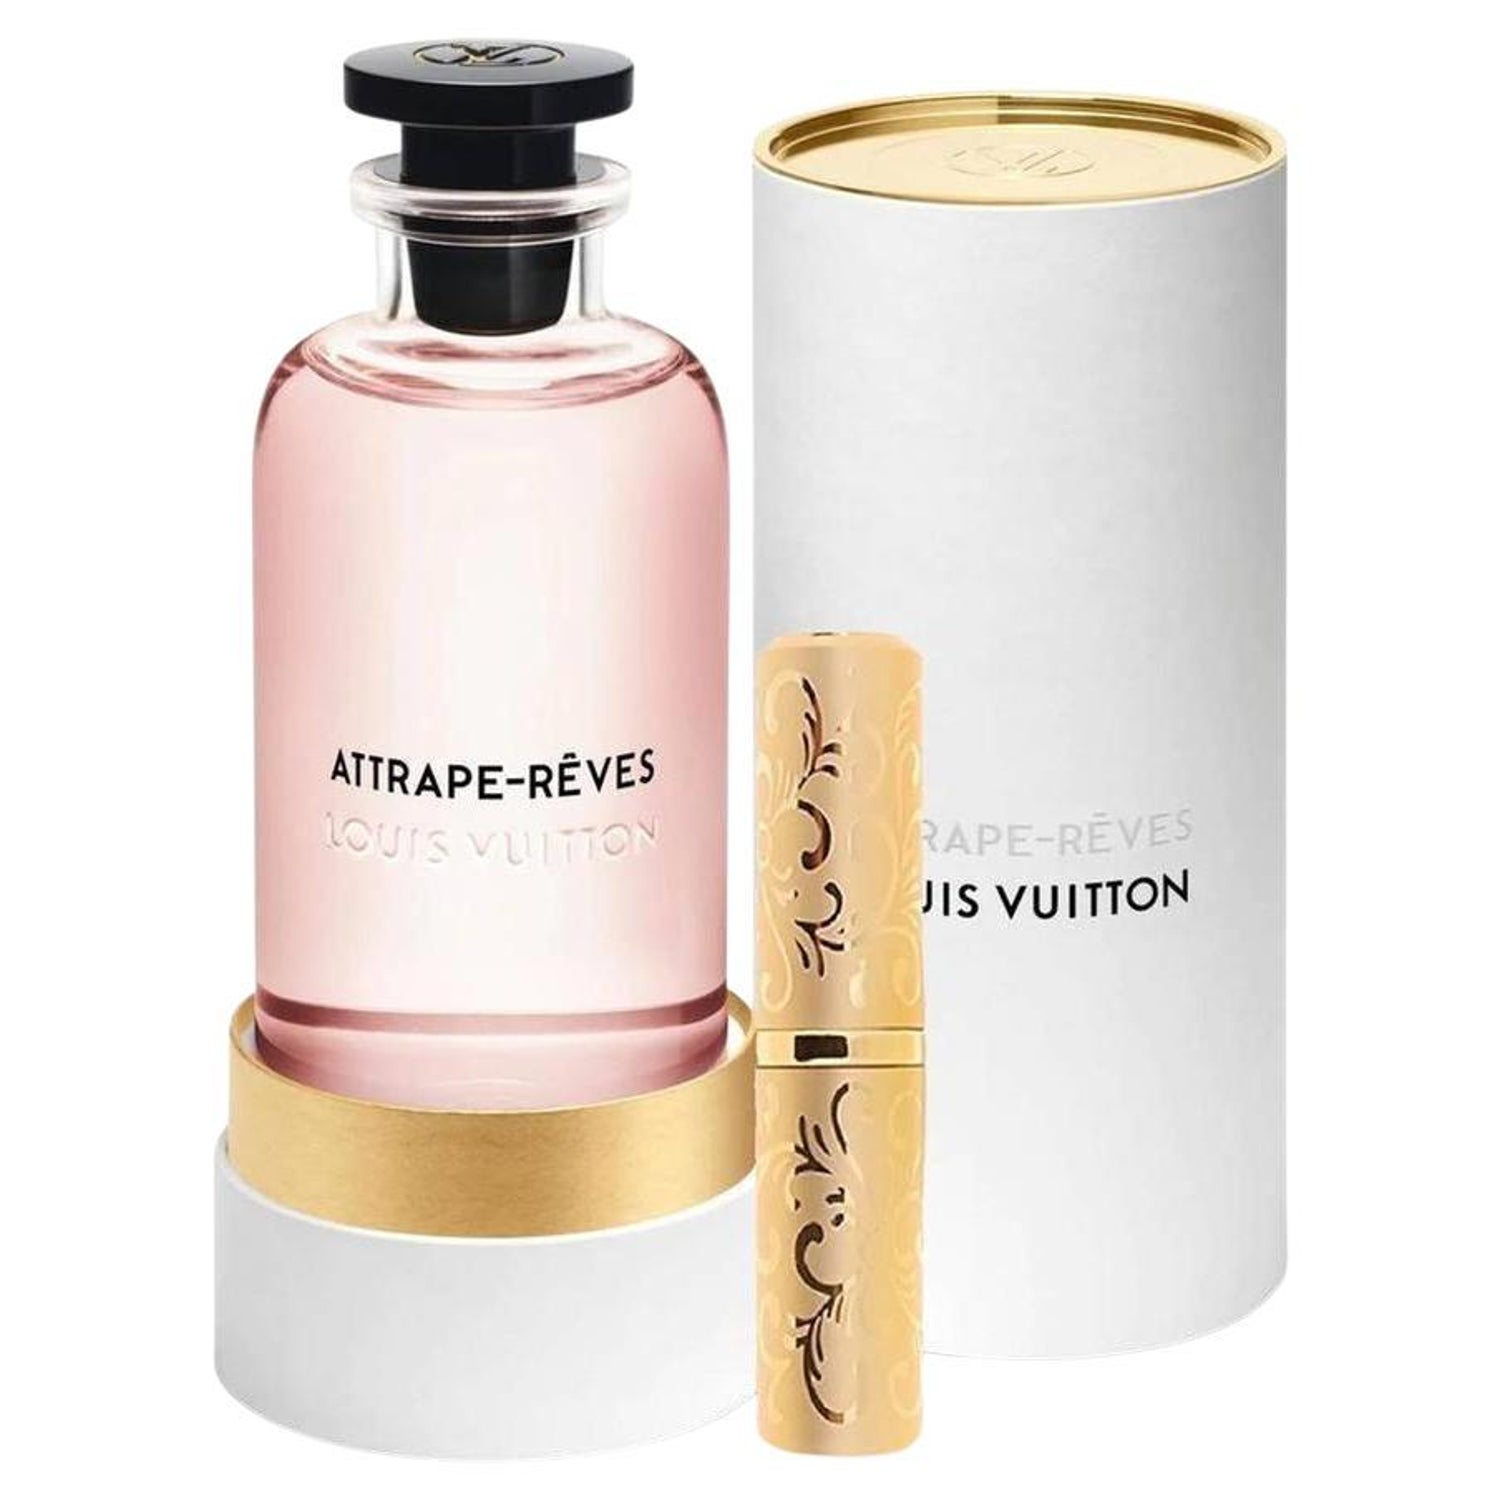 Louis Vuitton Rose des Vents Eau de Parfum 04 x 7.5 oz Travel Spray.